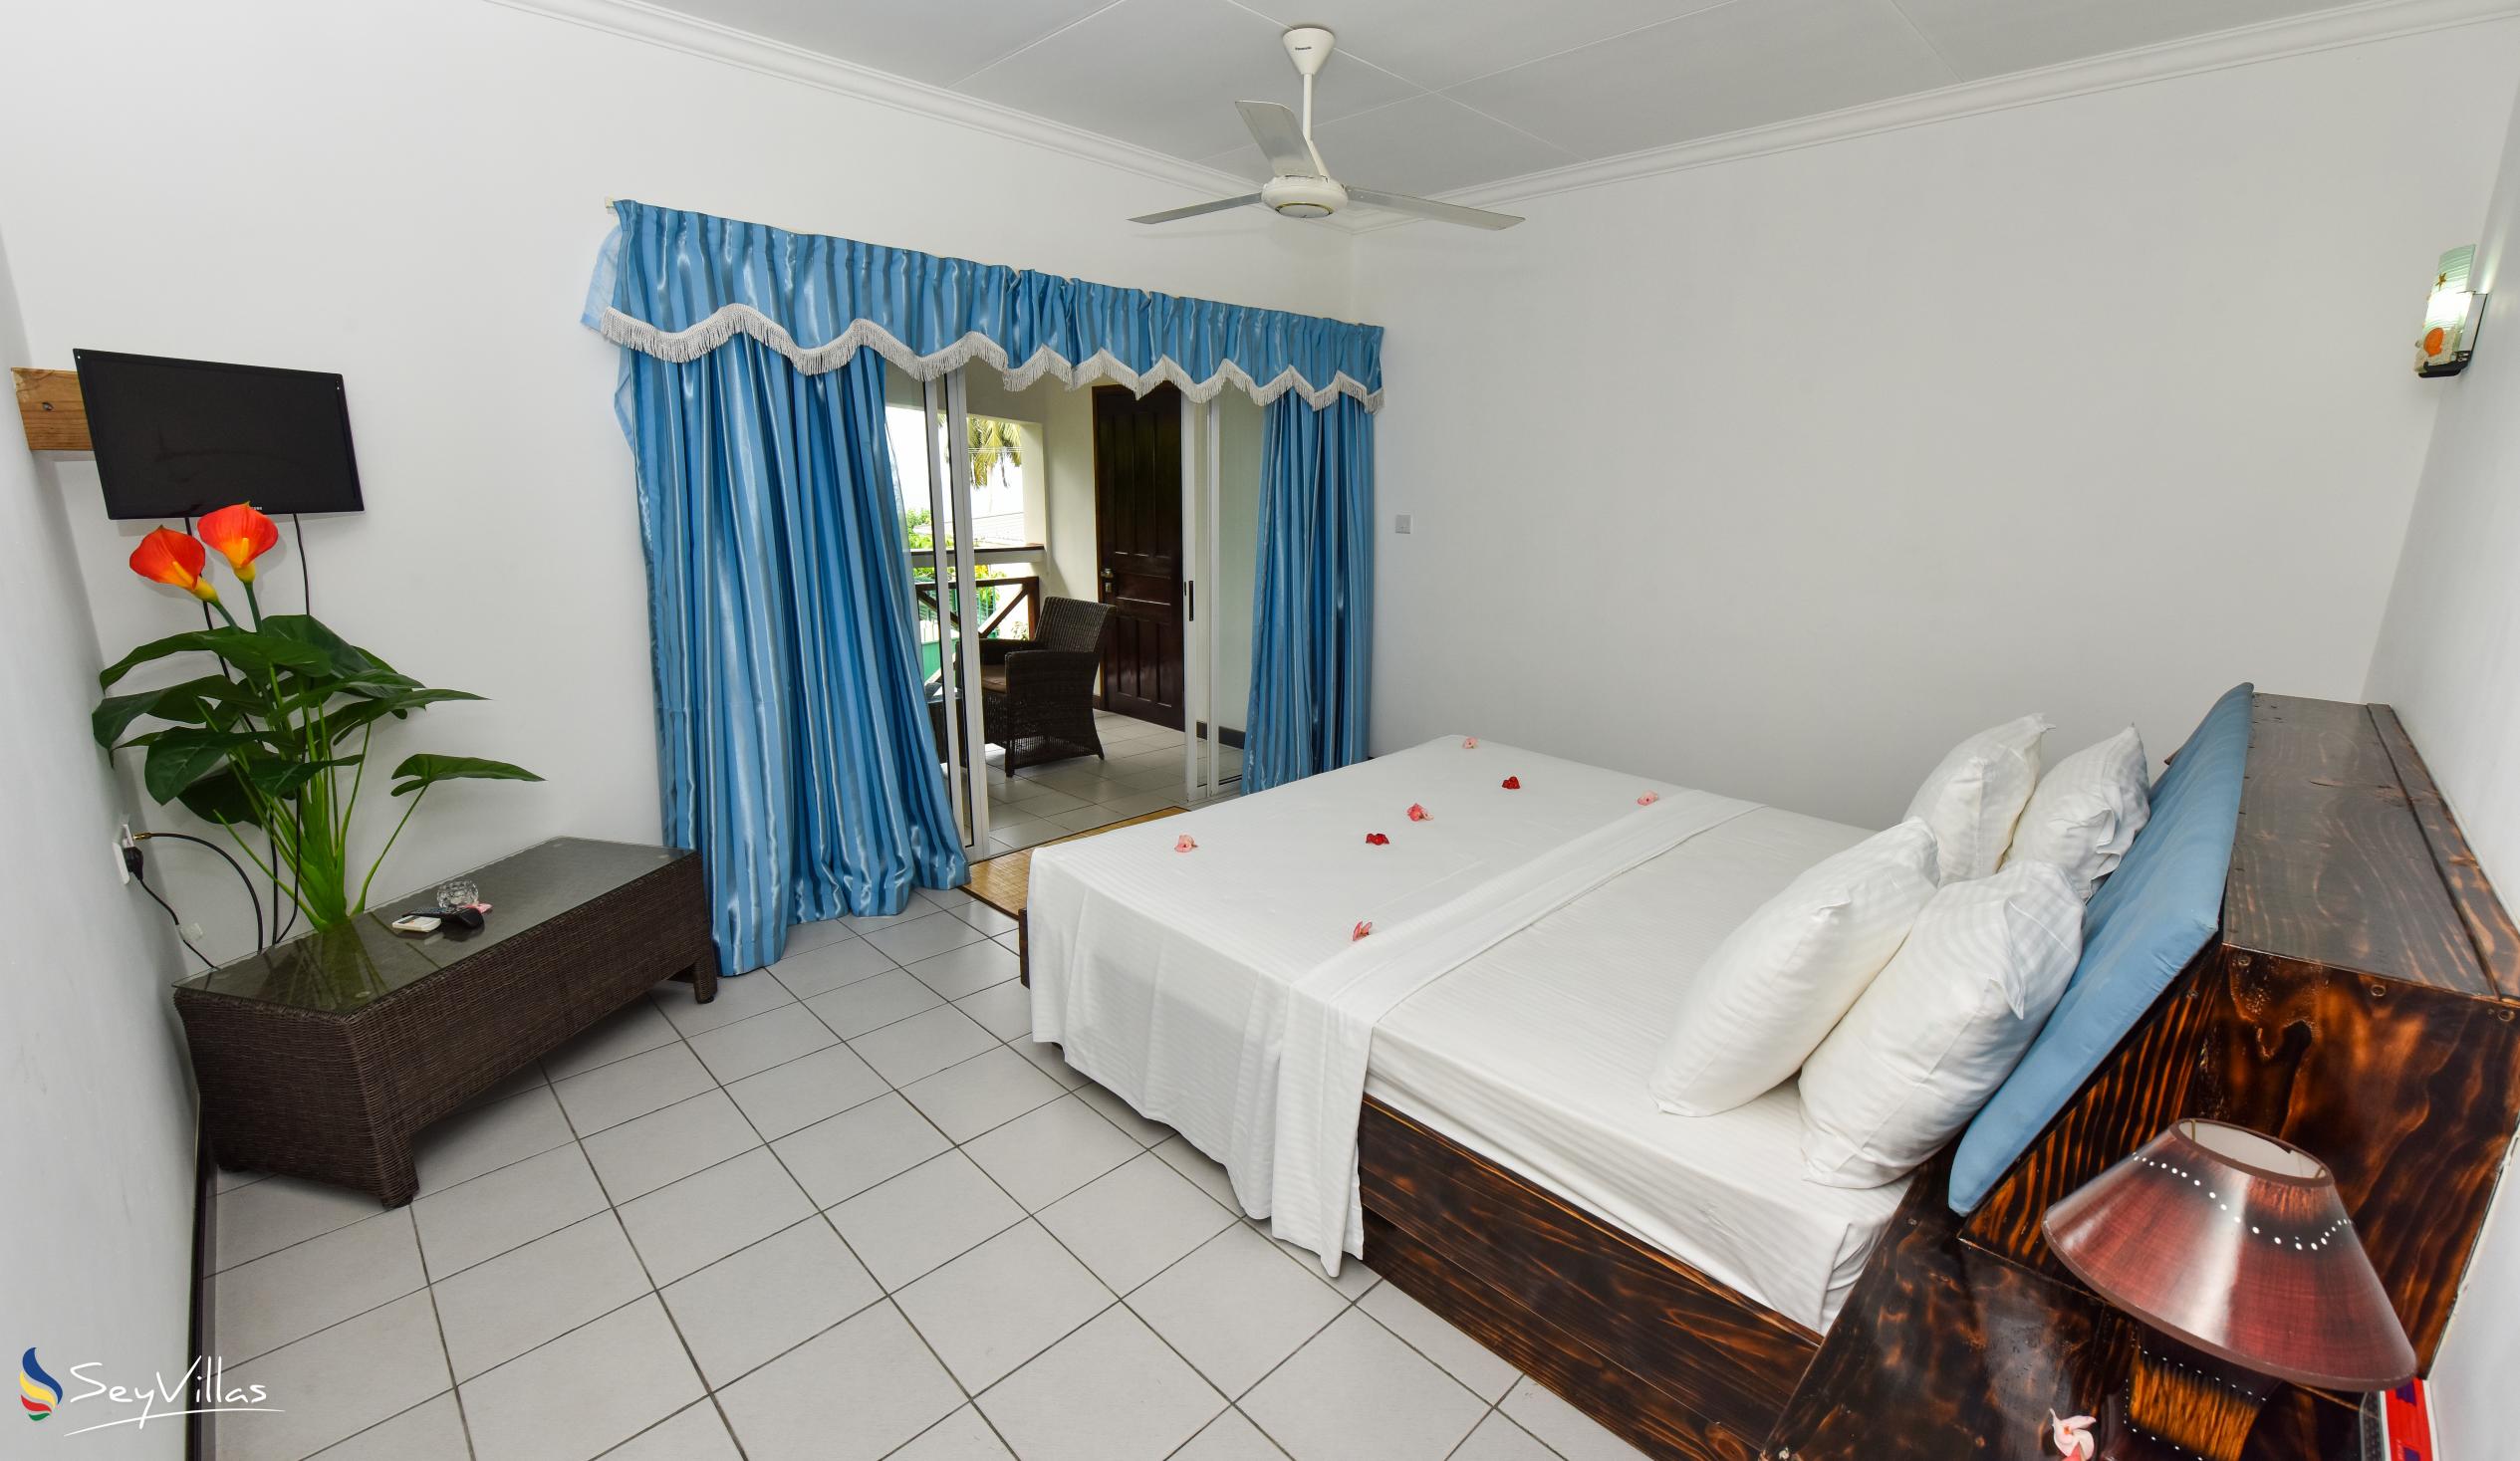 Foto 40: Anse Norwa Self Catering - Appartamento a pianterreno (Job) - Mahé (Seychelles)